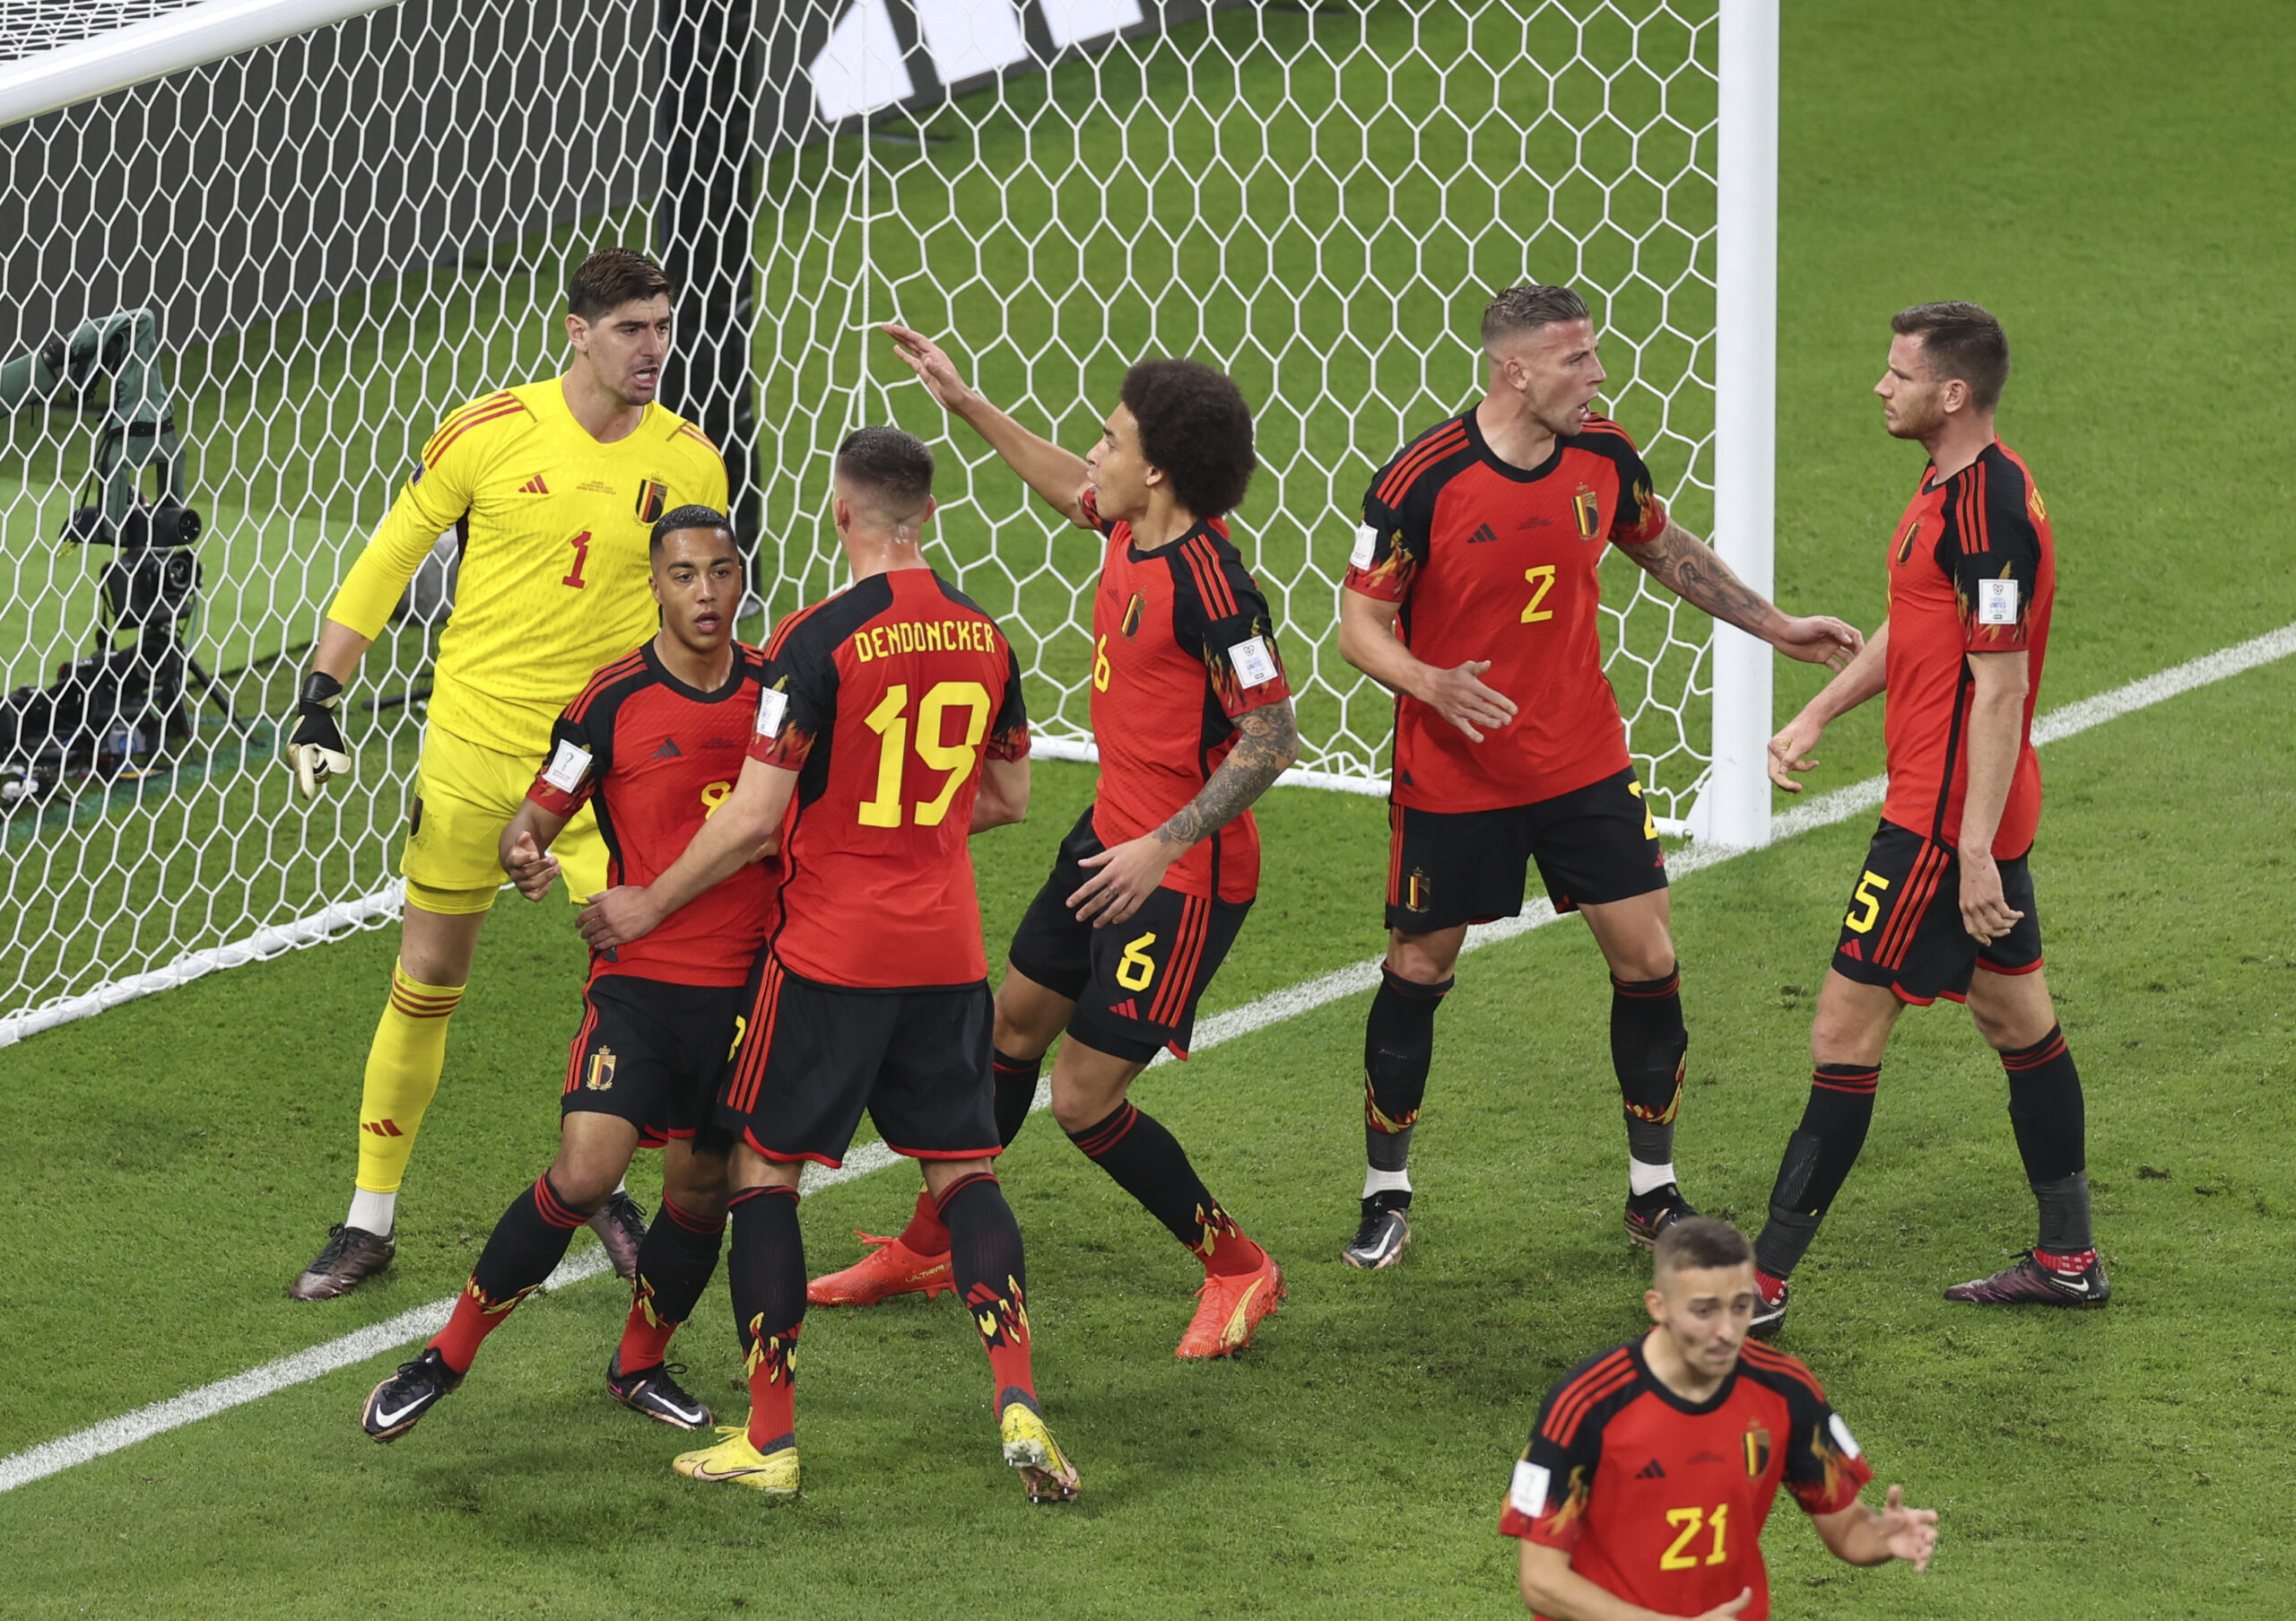 La Selección de Bélgica sufre de problemas a la interna entre sus jugadores en pleno Mundial. Foto: Xinhua.